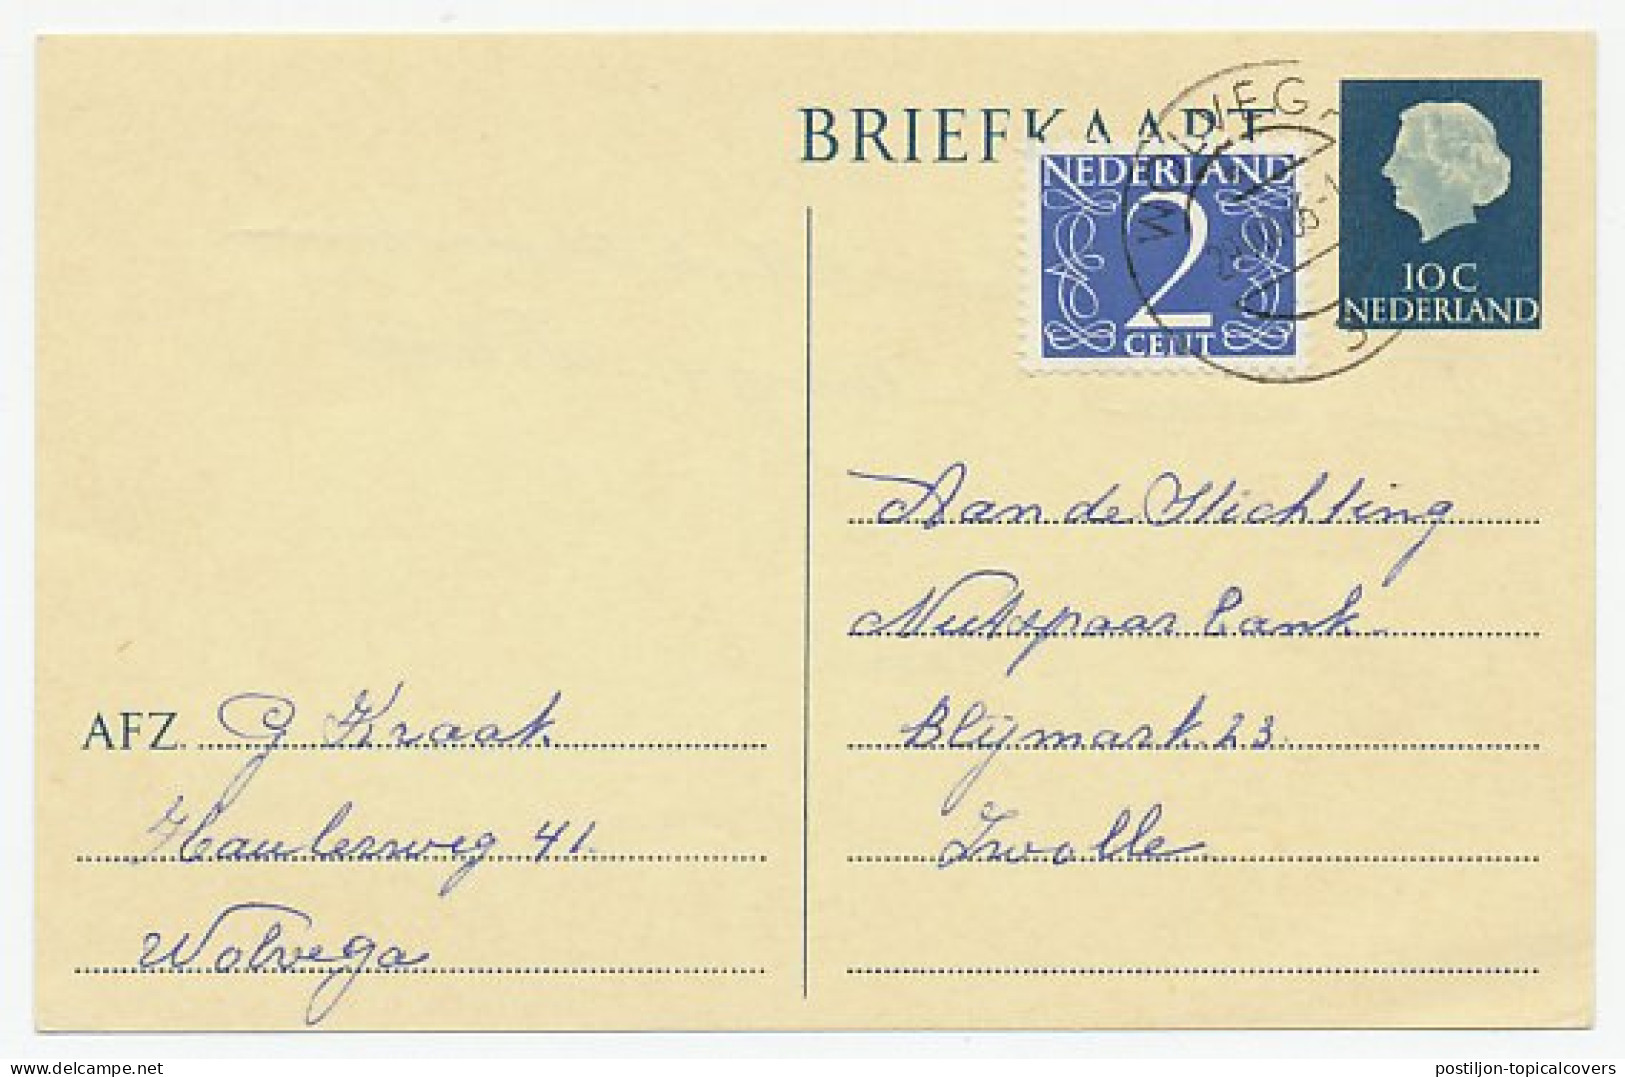 Briefkaart G. 330 / Bijfrankering Wolvega - Zwolle 1966 - Ganzsachen